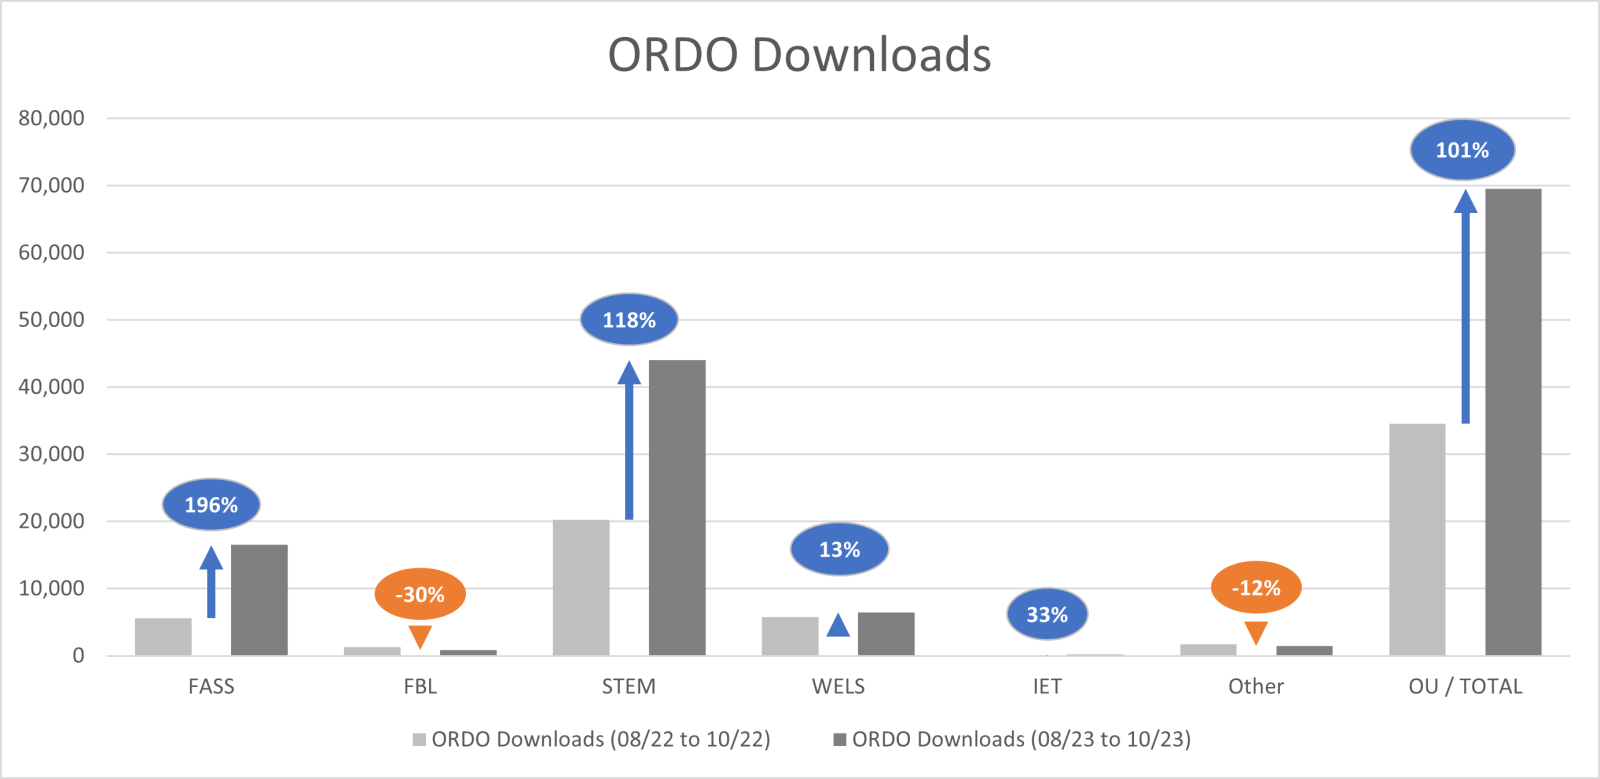 Bar chart showing ORDO downloads